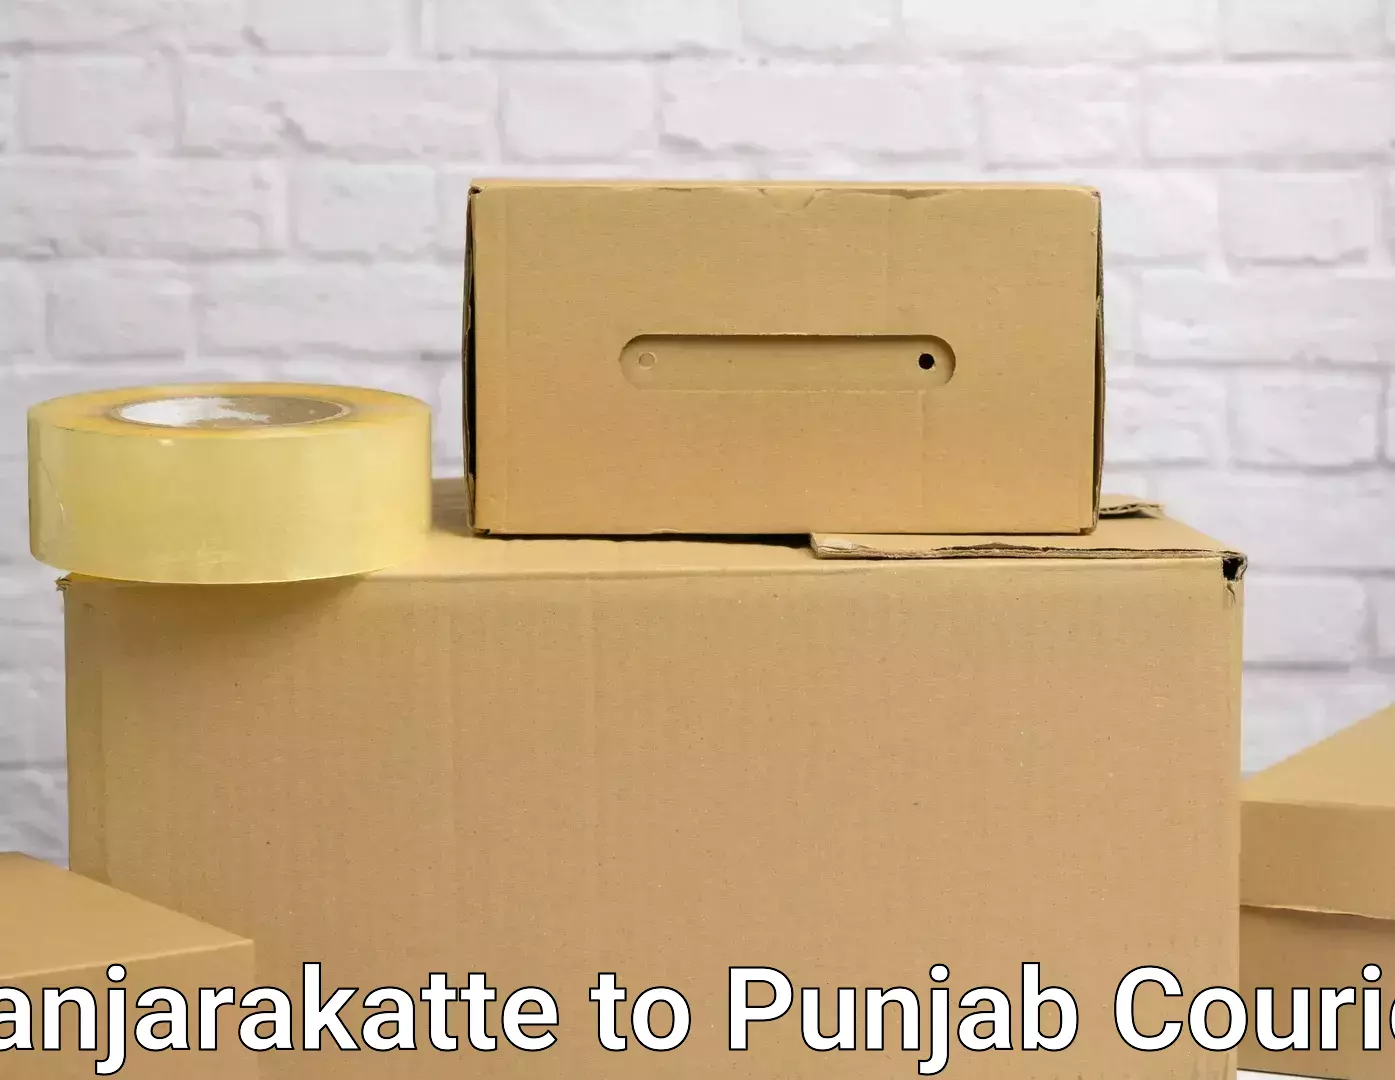 Furniture movers and packers Kanjarakatte to Punjab